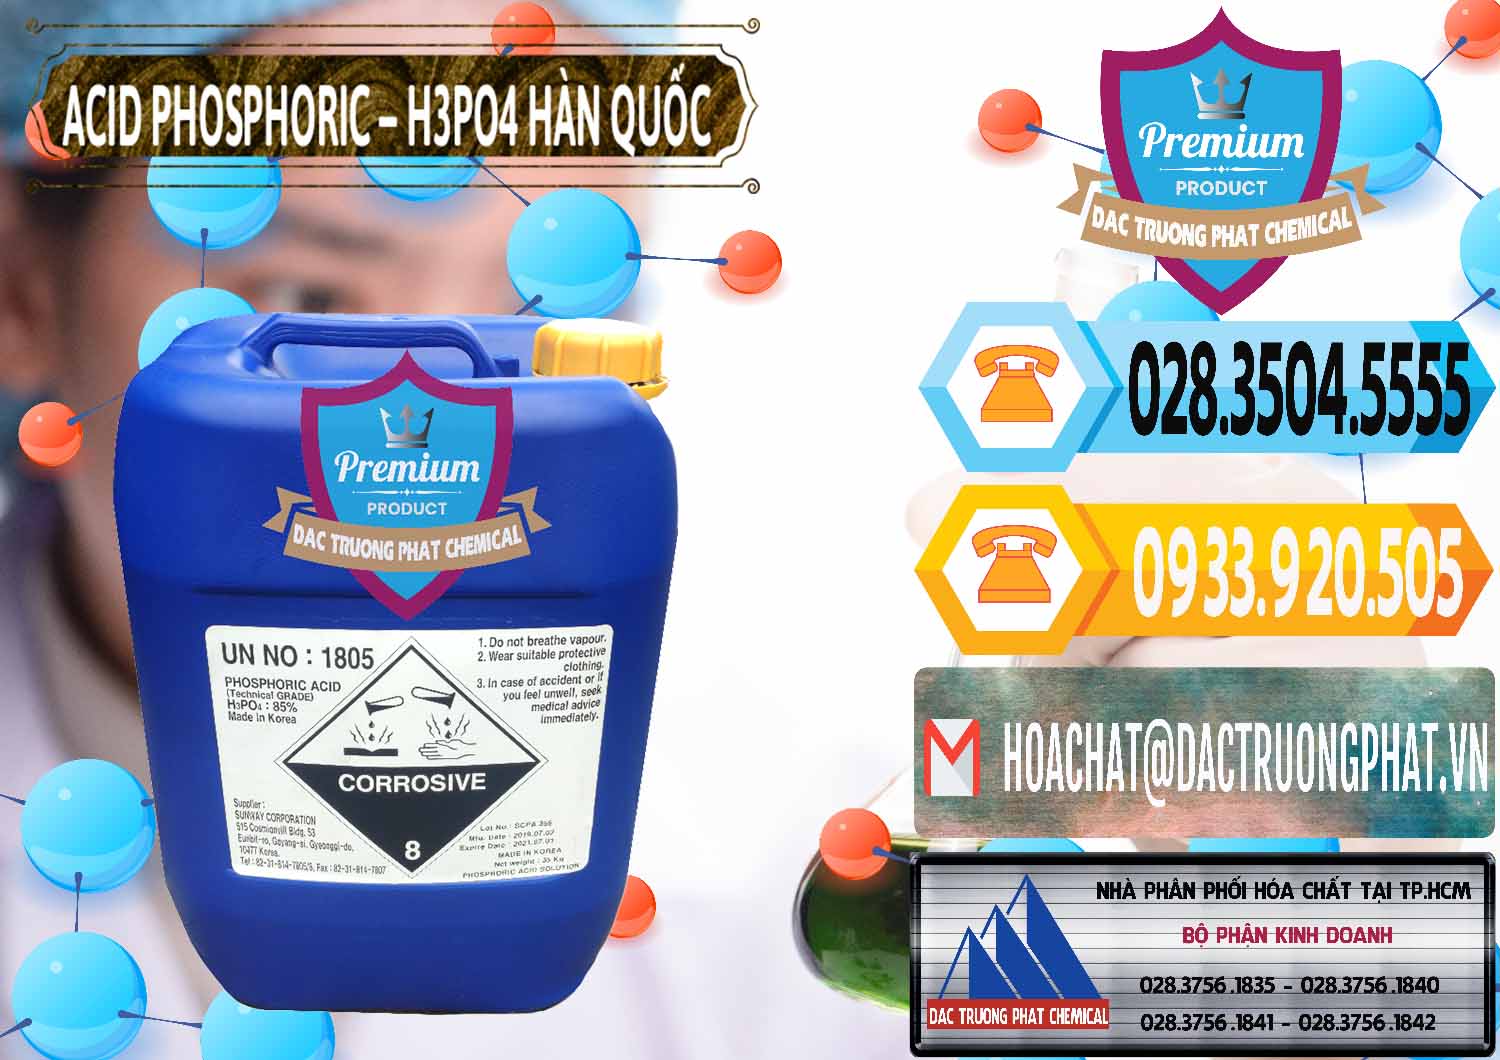 Cty chuyên nhập khẩu và bán Acid Phosphoric – H3PO4 85% Can Xanh Hàn Quốc Korea - 0016 - Đơn vị chuyên kinh doanh ( phân phối ) hóa chất tại TP.HCM - hoachattayrua.net